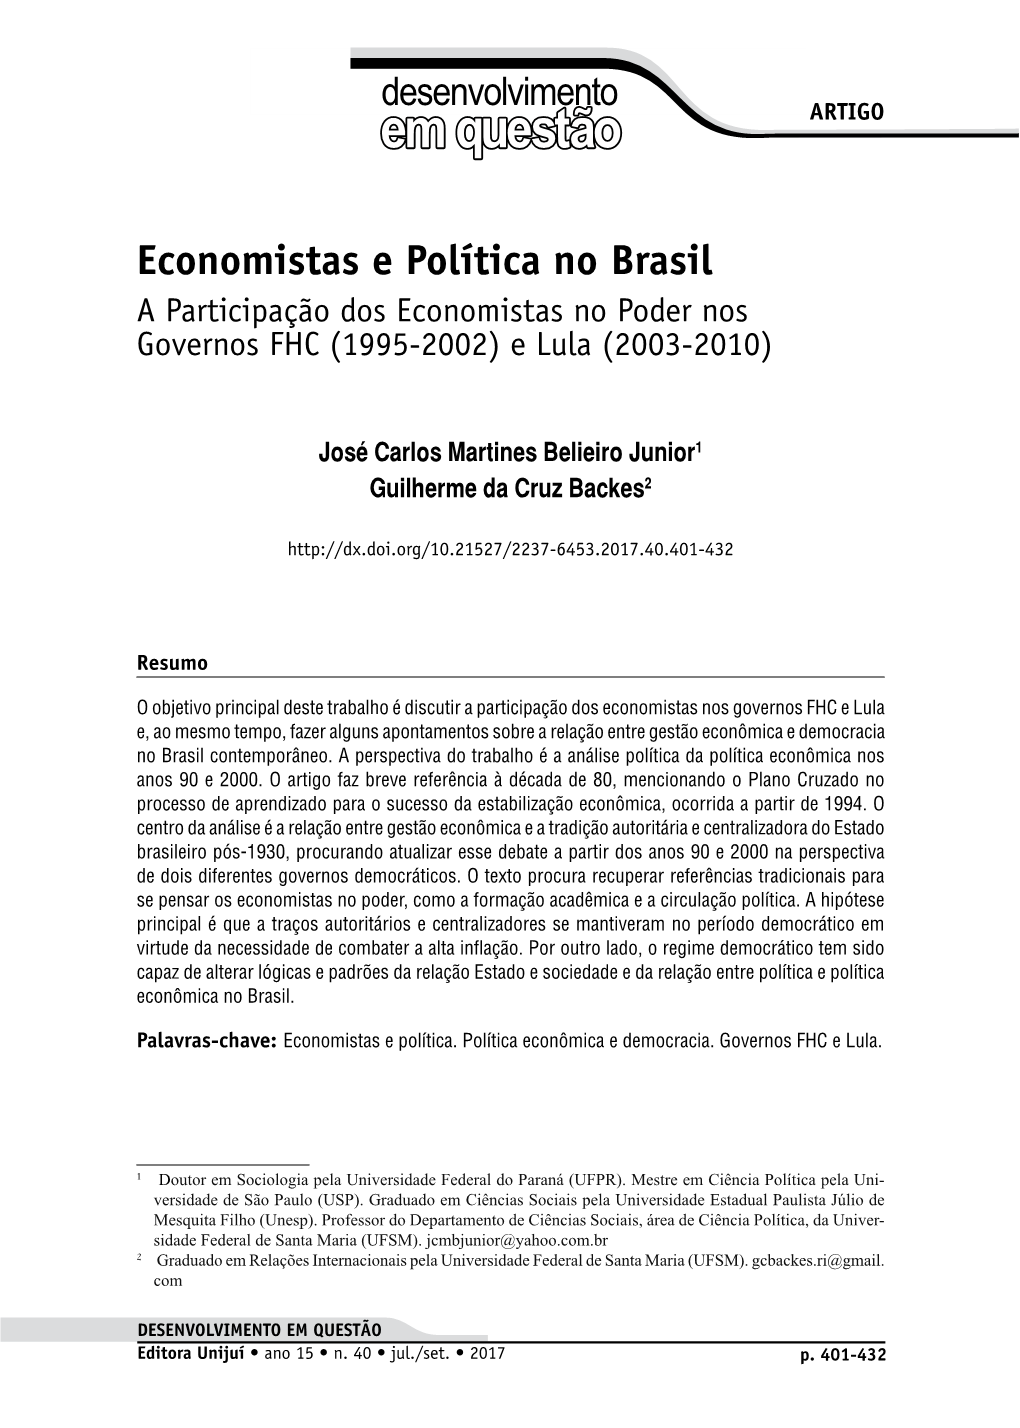 Economistas E Política No Brasil a Participação Dos Economistas No Poder Nos Governos FHC (1995-2002) E Lula (2003-2010)